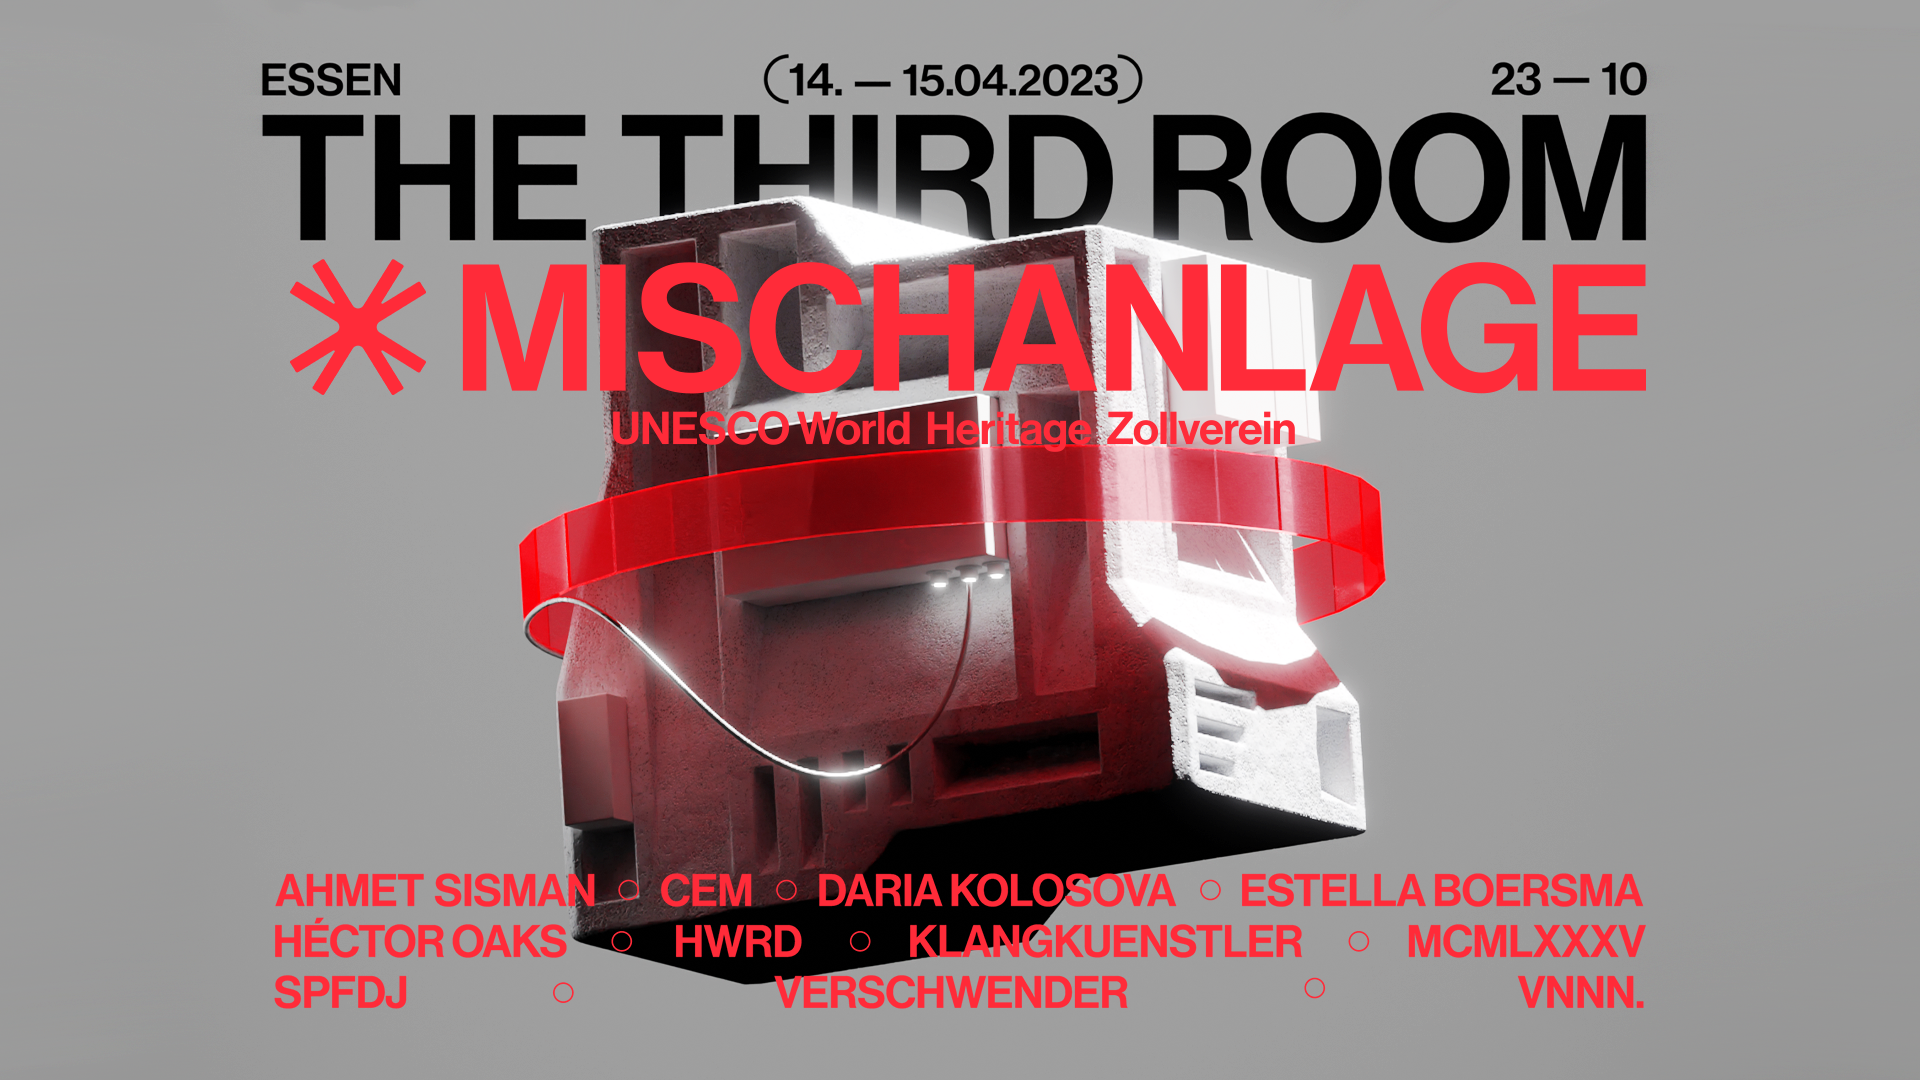 The Third Room x Mischanlage - フライヤー表